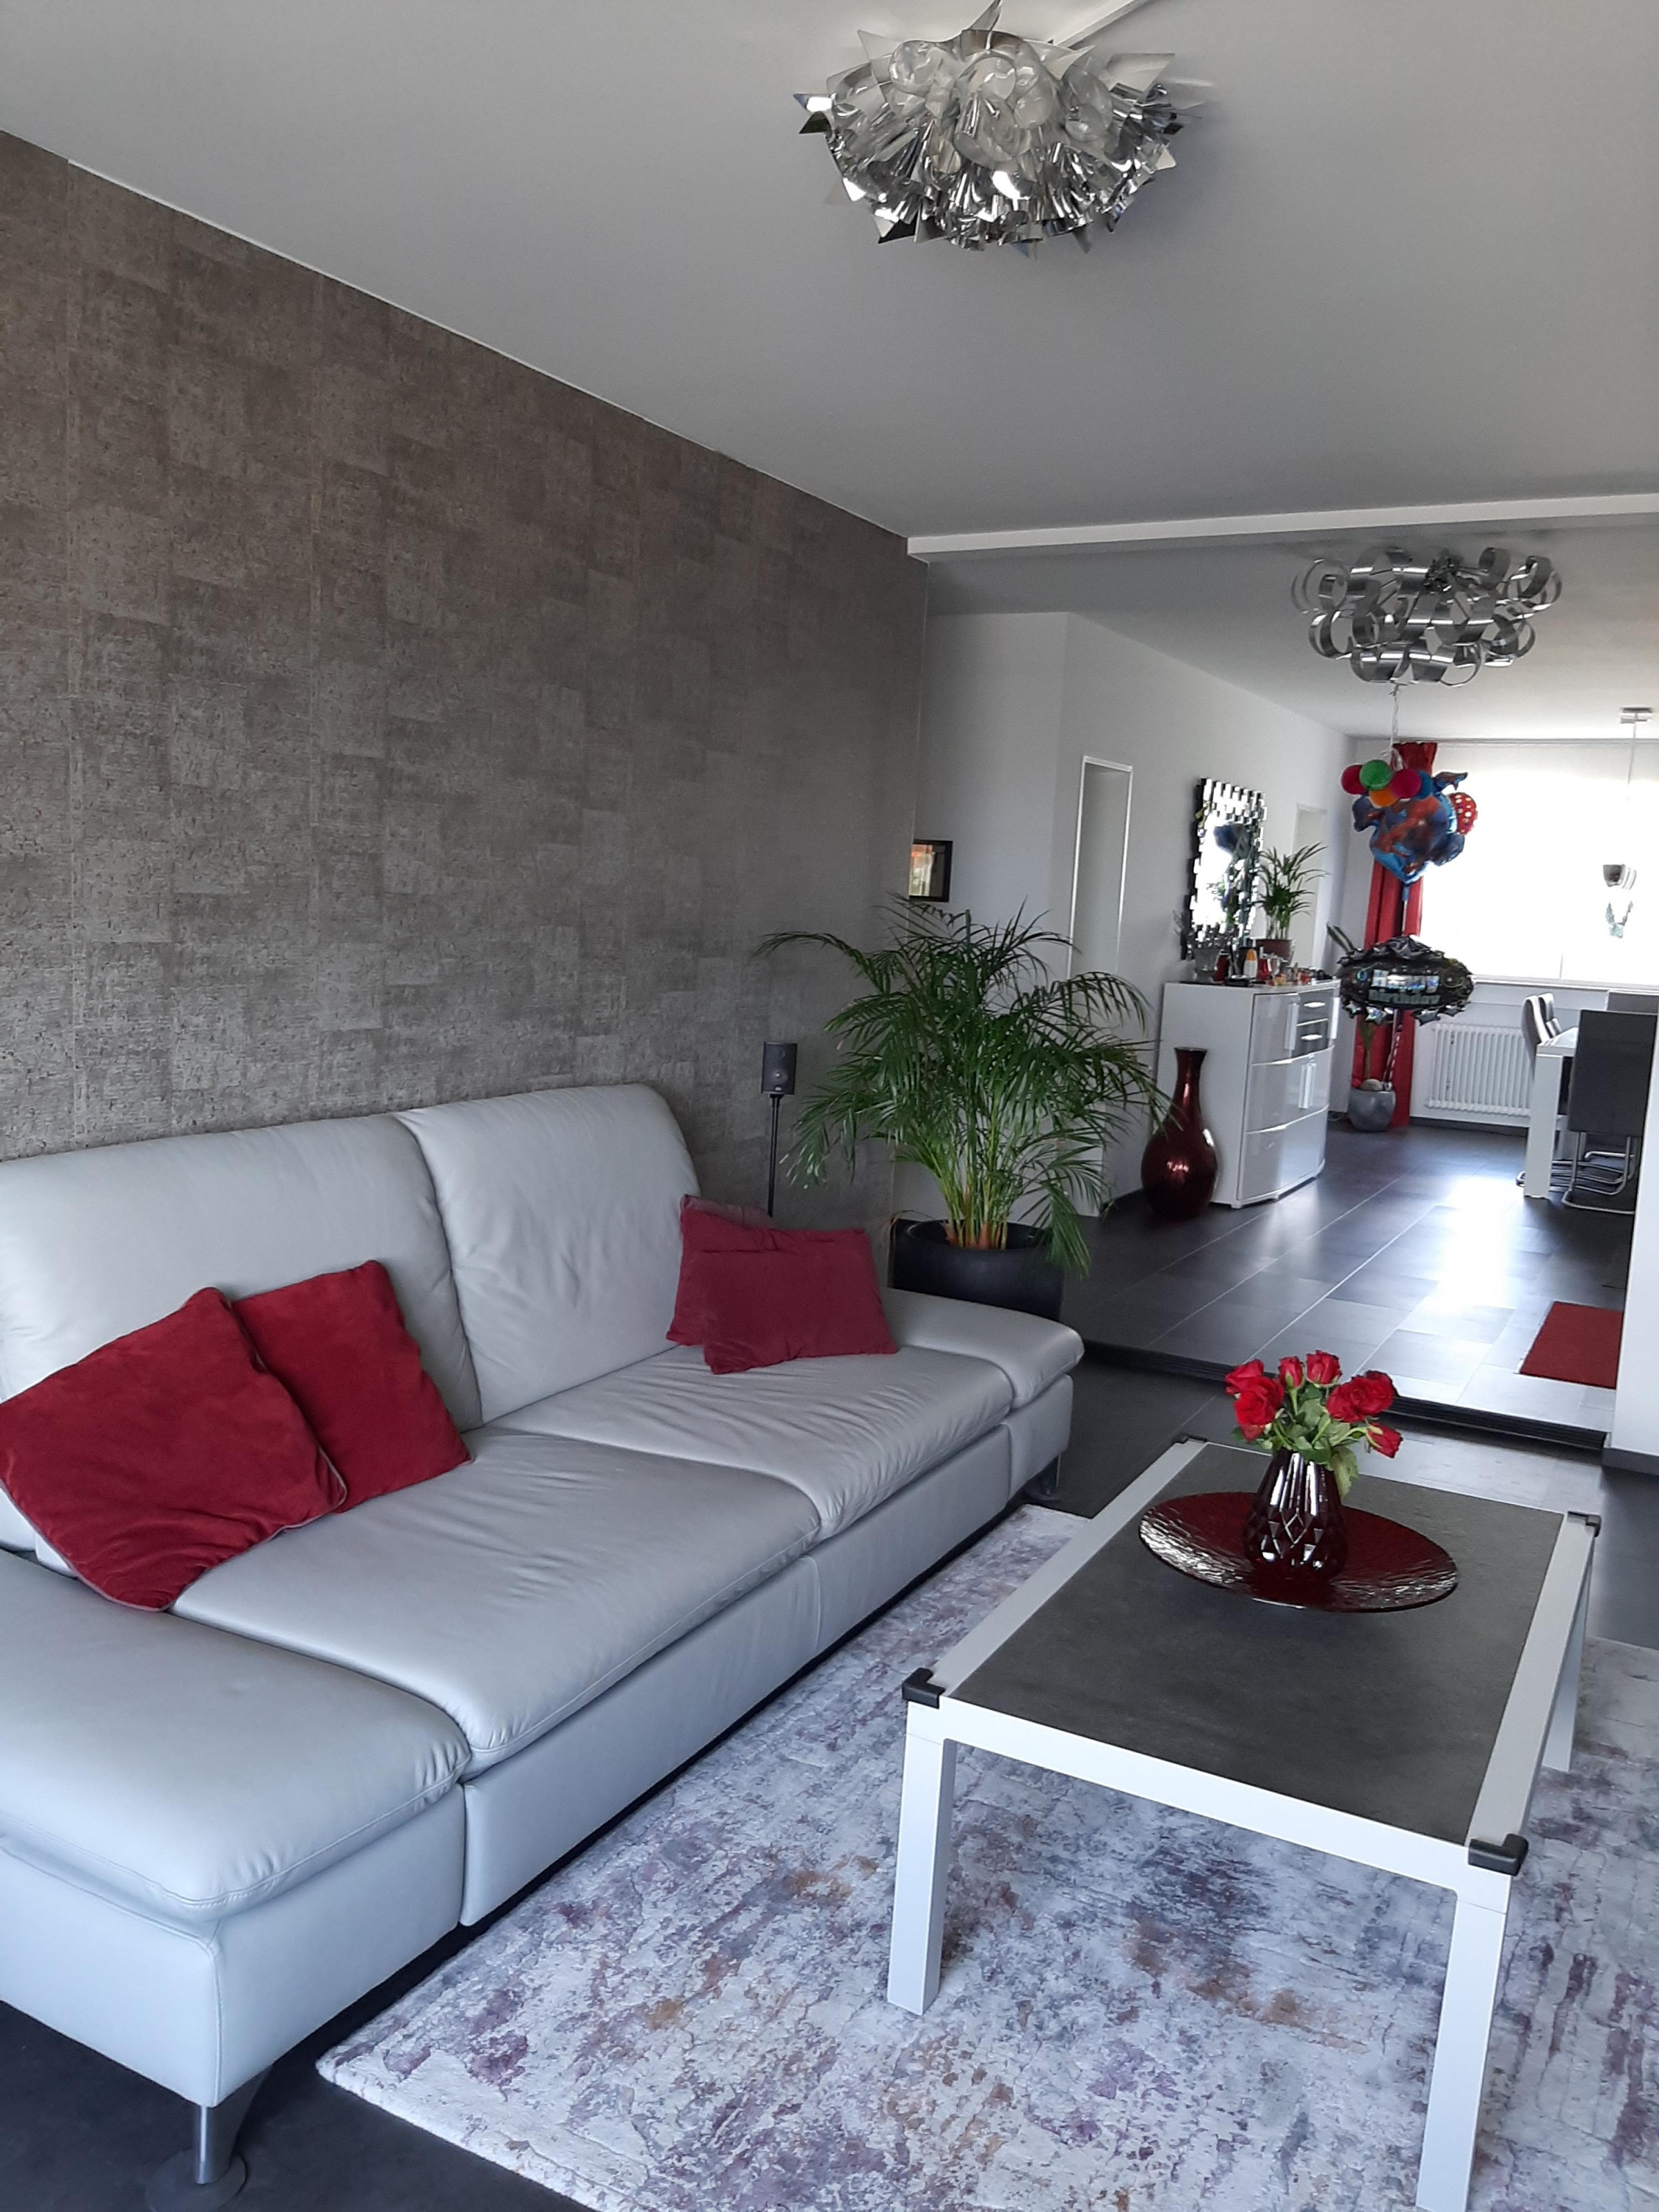 Tapeten Ideen Für Die Wandgestaltung Bei Couch von Bilder Tapeten Wohnzimmer Photo